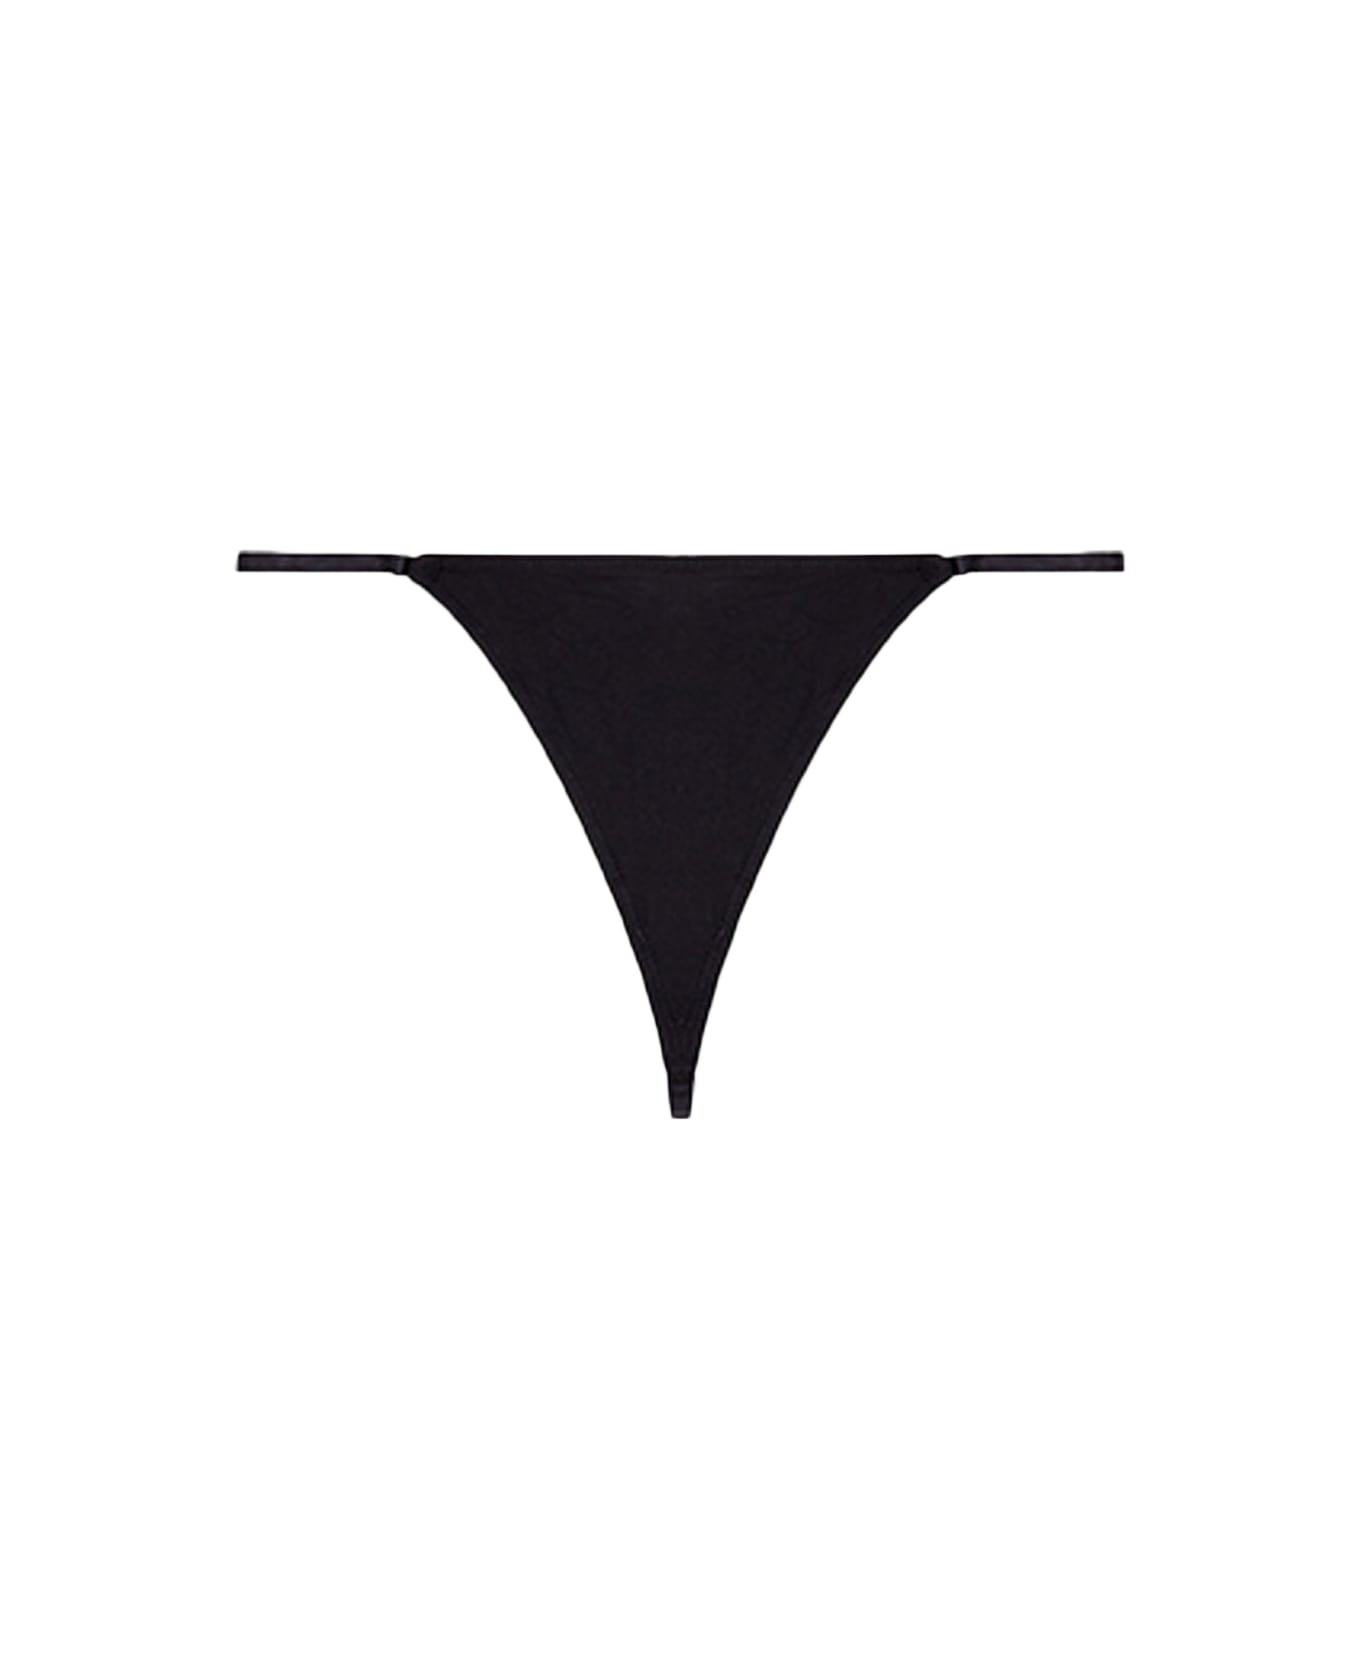 Diesel Ufst-d-string Black thong with metal Oval D logo - Ufst D-String - Nero ショーツ